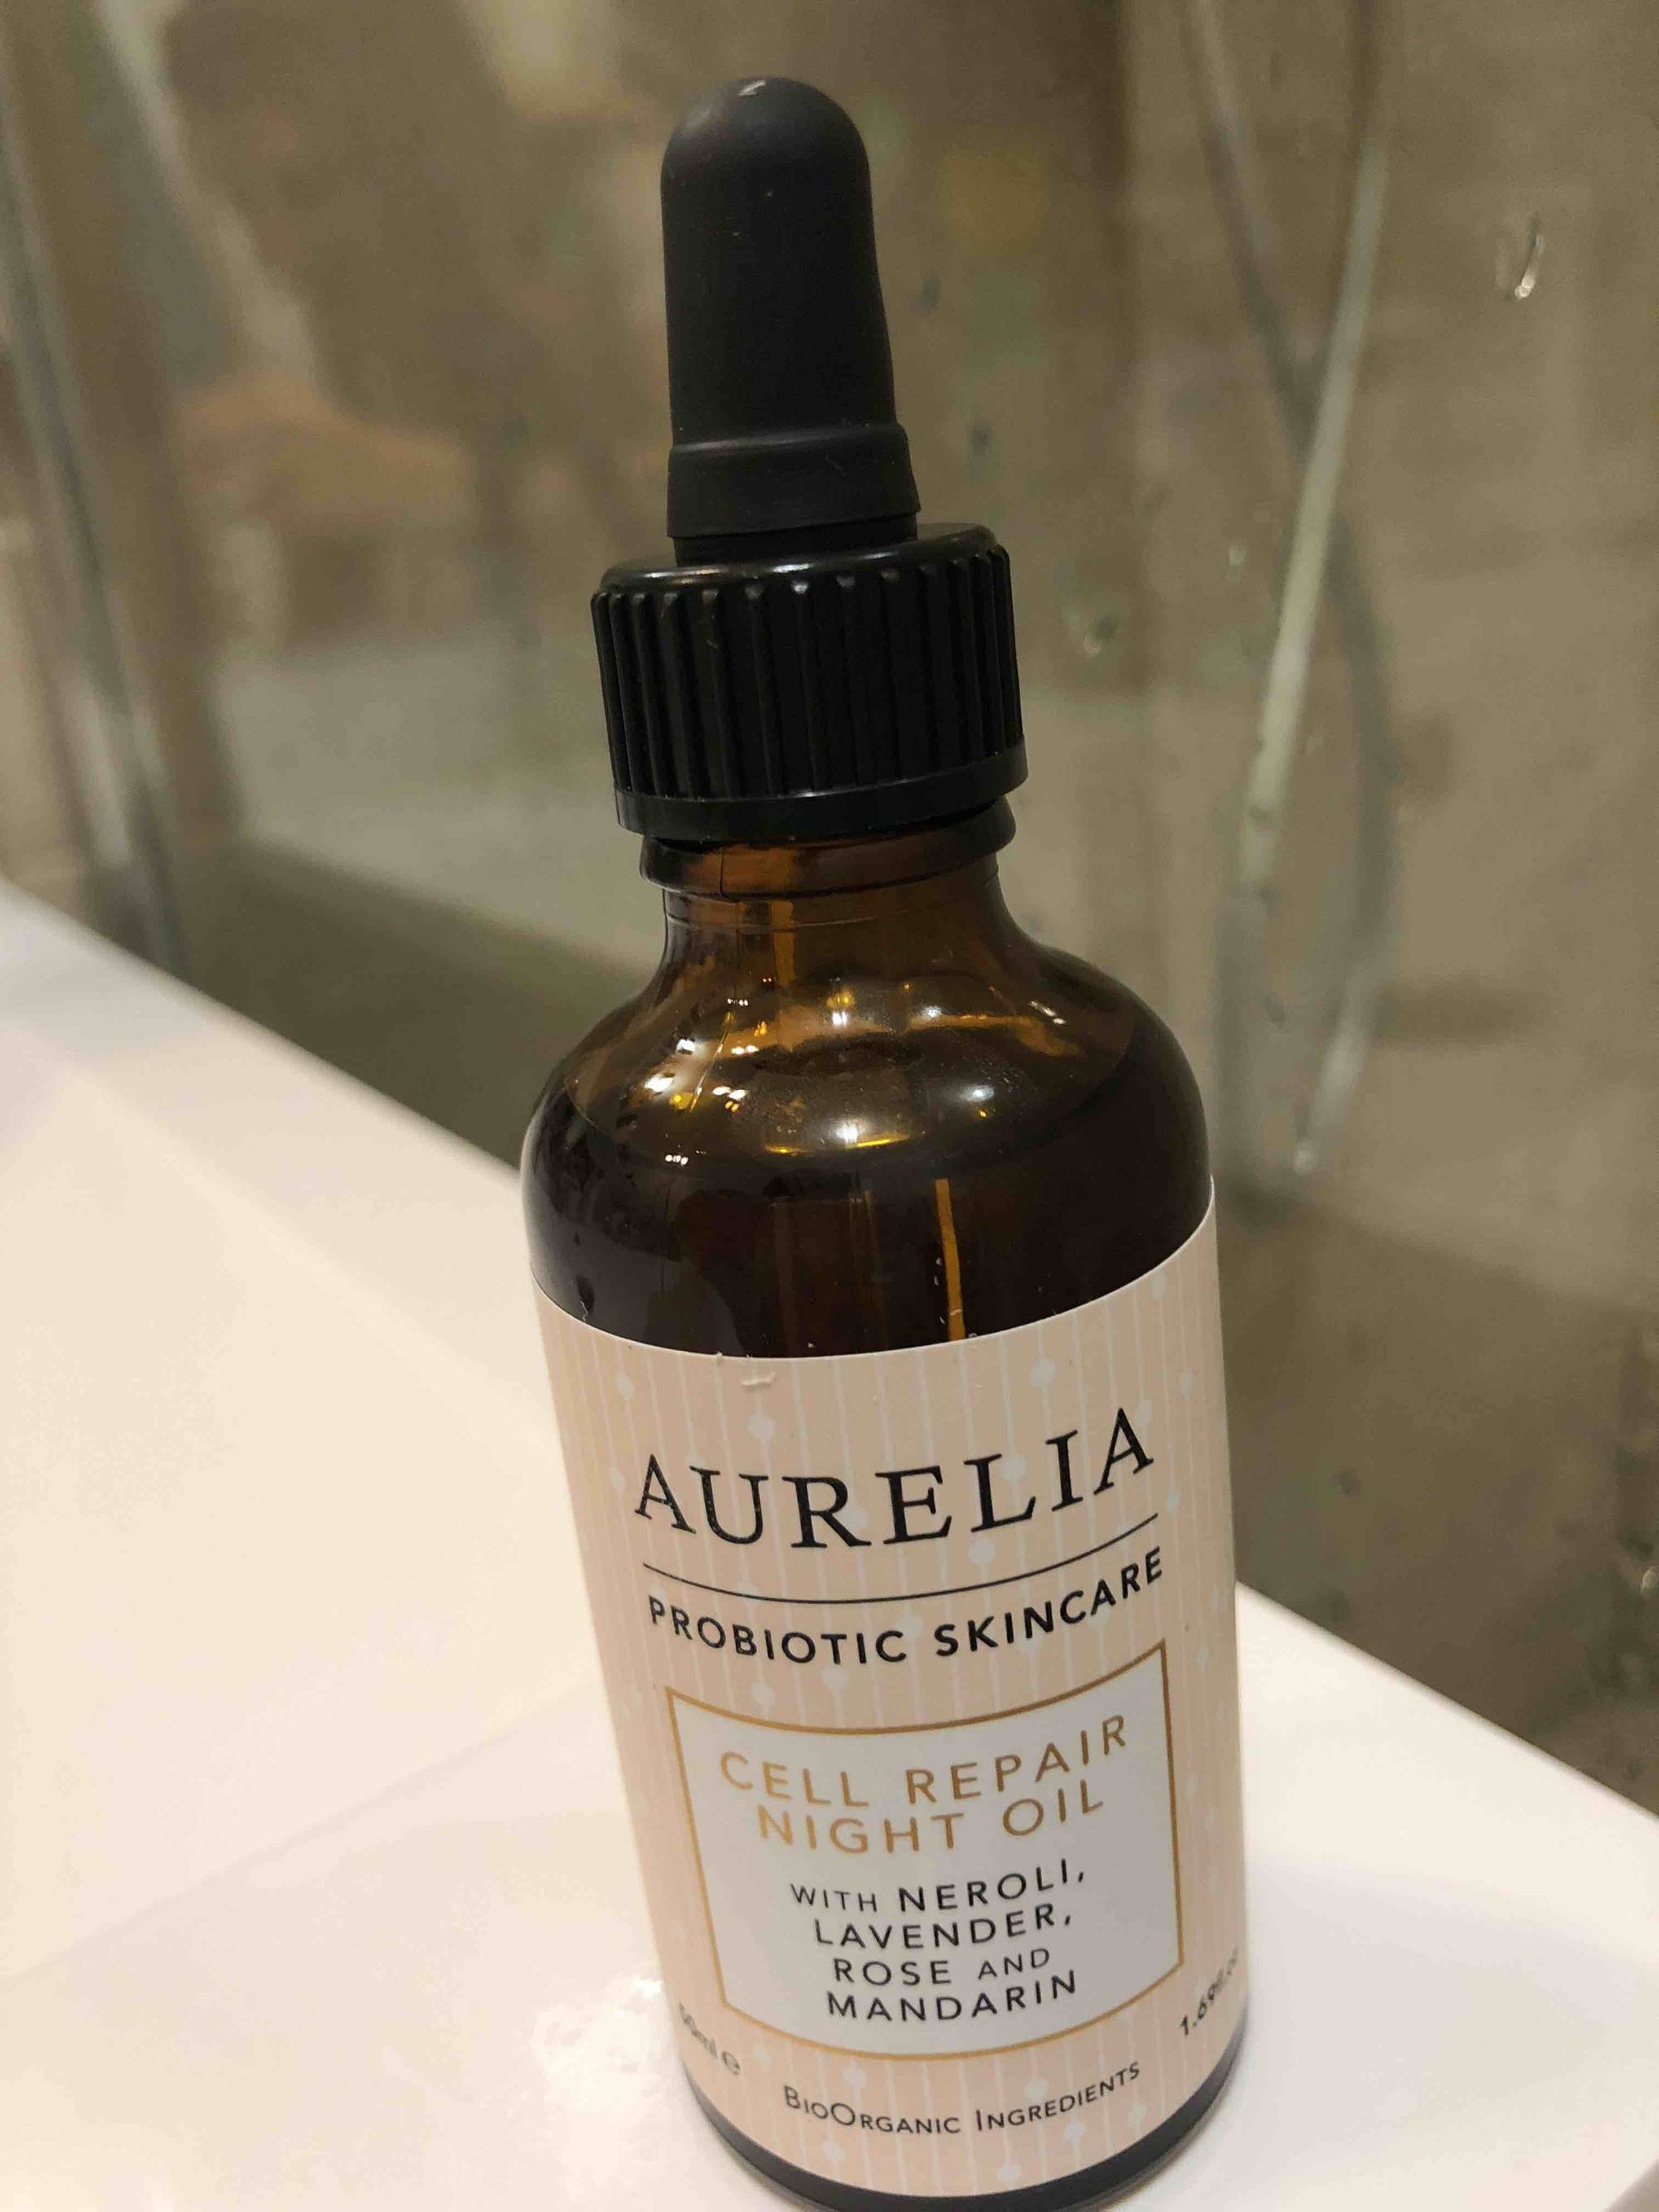 AURELIA - Probiotic skincare - Cell repair night oil